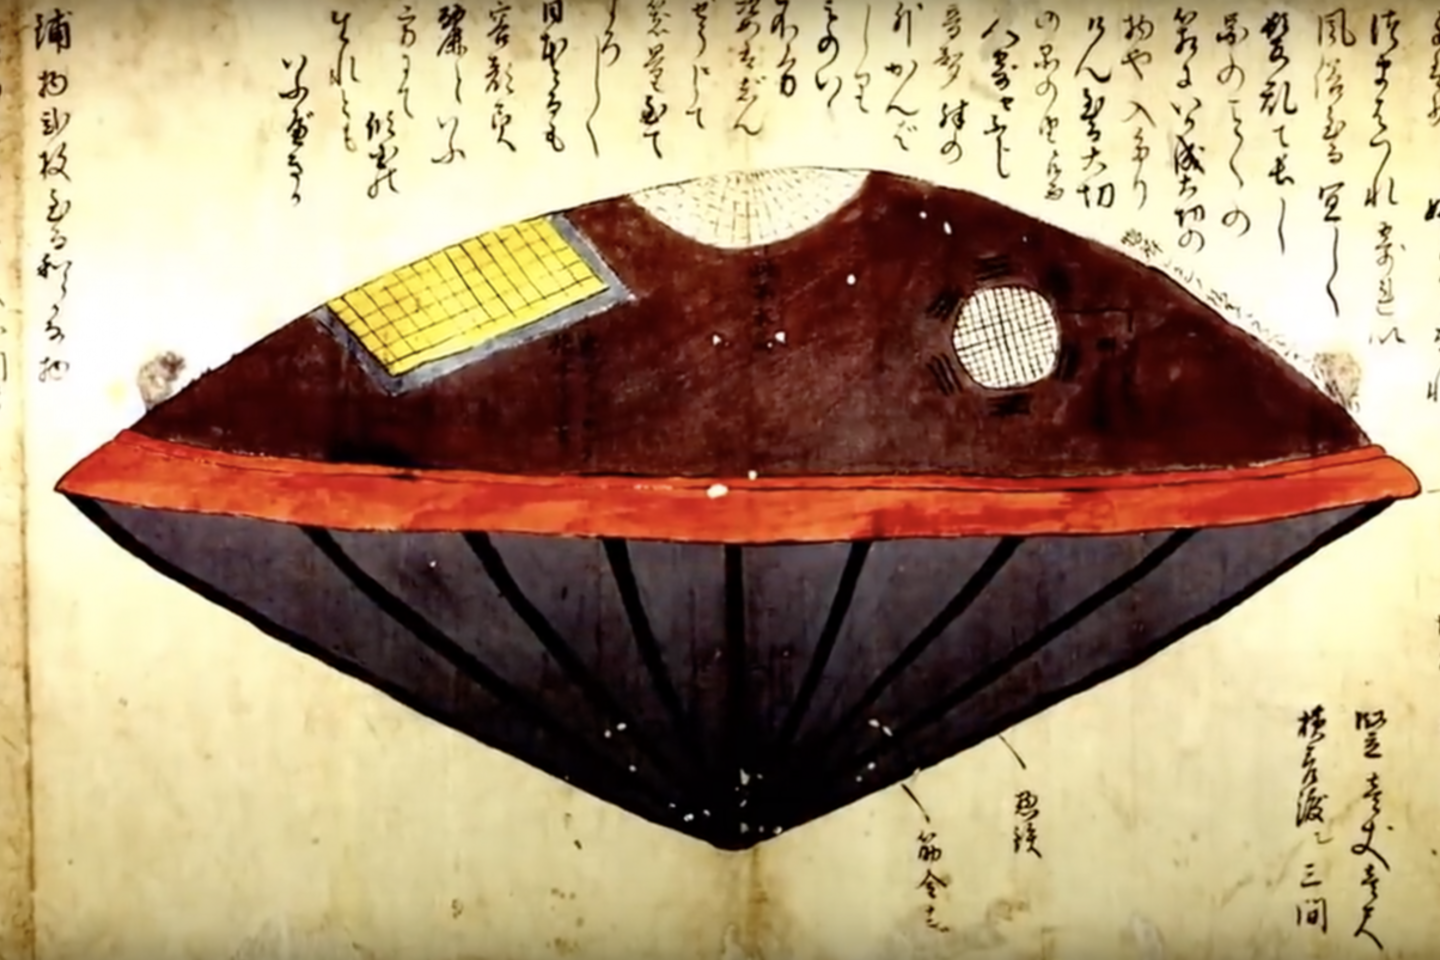  Pasakojama, kad 1803 metais Japonijos pakrantėje žvejai iš vandens ištraukė apvalų neatpažintą objektą. Jis buvo pavadintas „Utsuro-Bune“ ir aprašytas trijuose tarpusavyje susijusiuose tekstuose.<br> Wikimedia commons